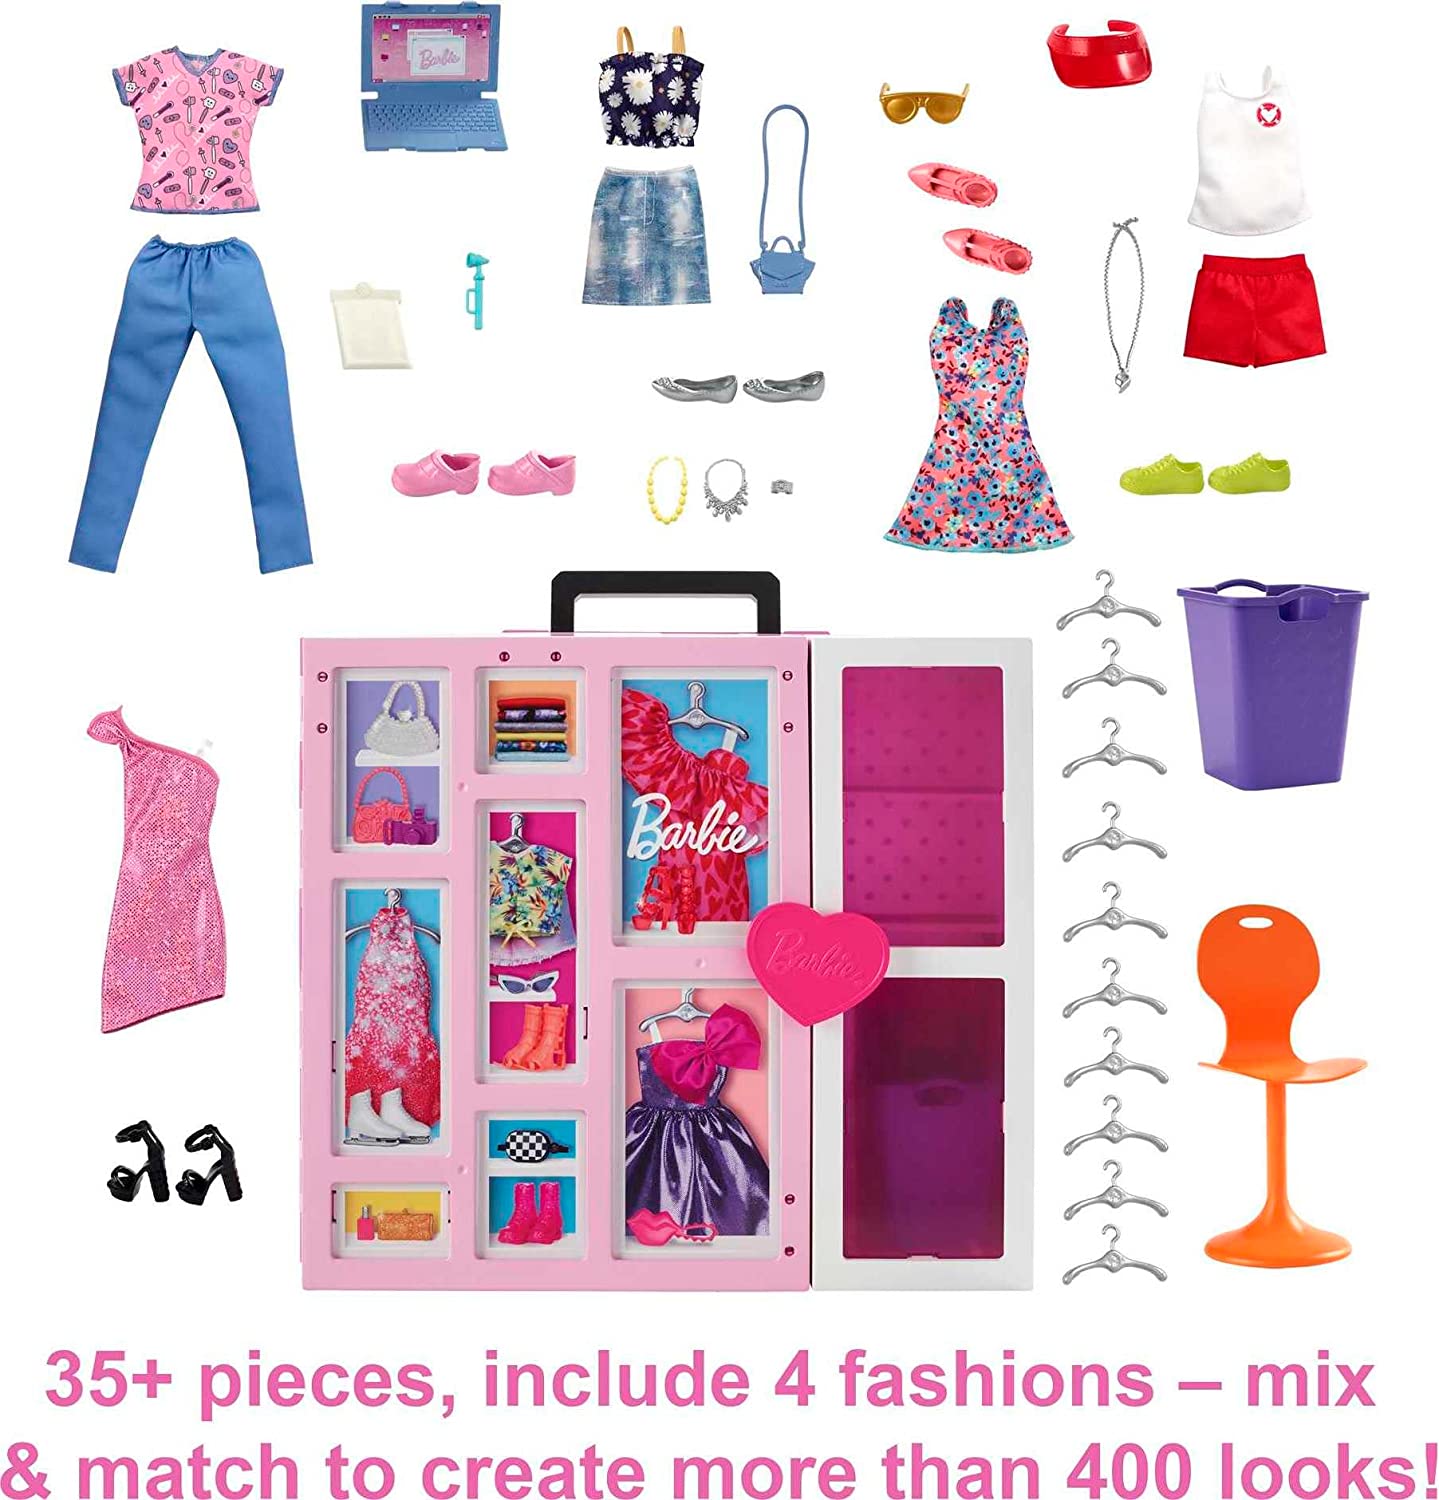 Barbie - Dream Closet Playset